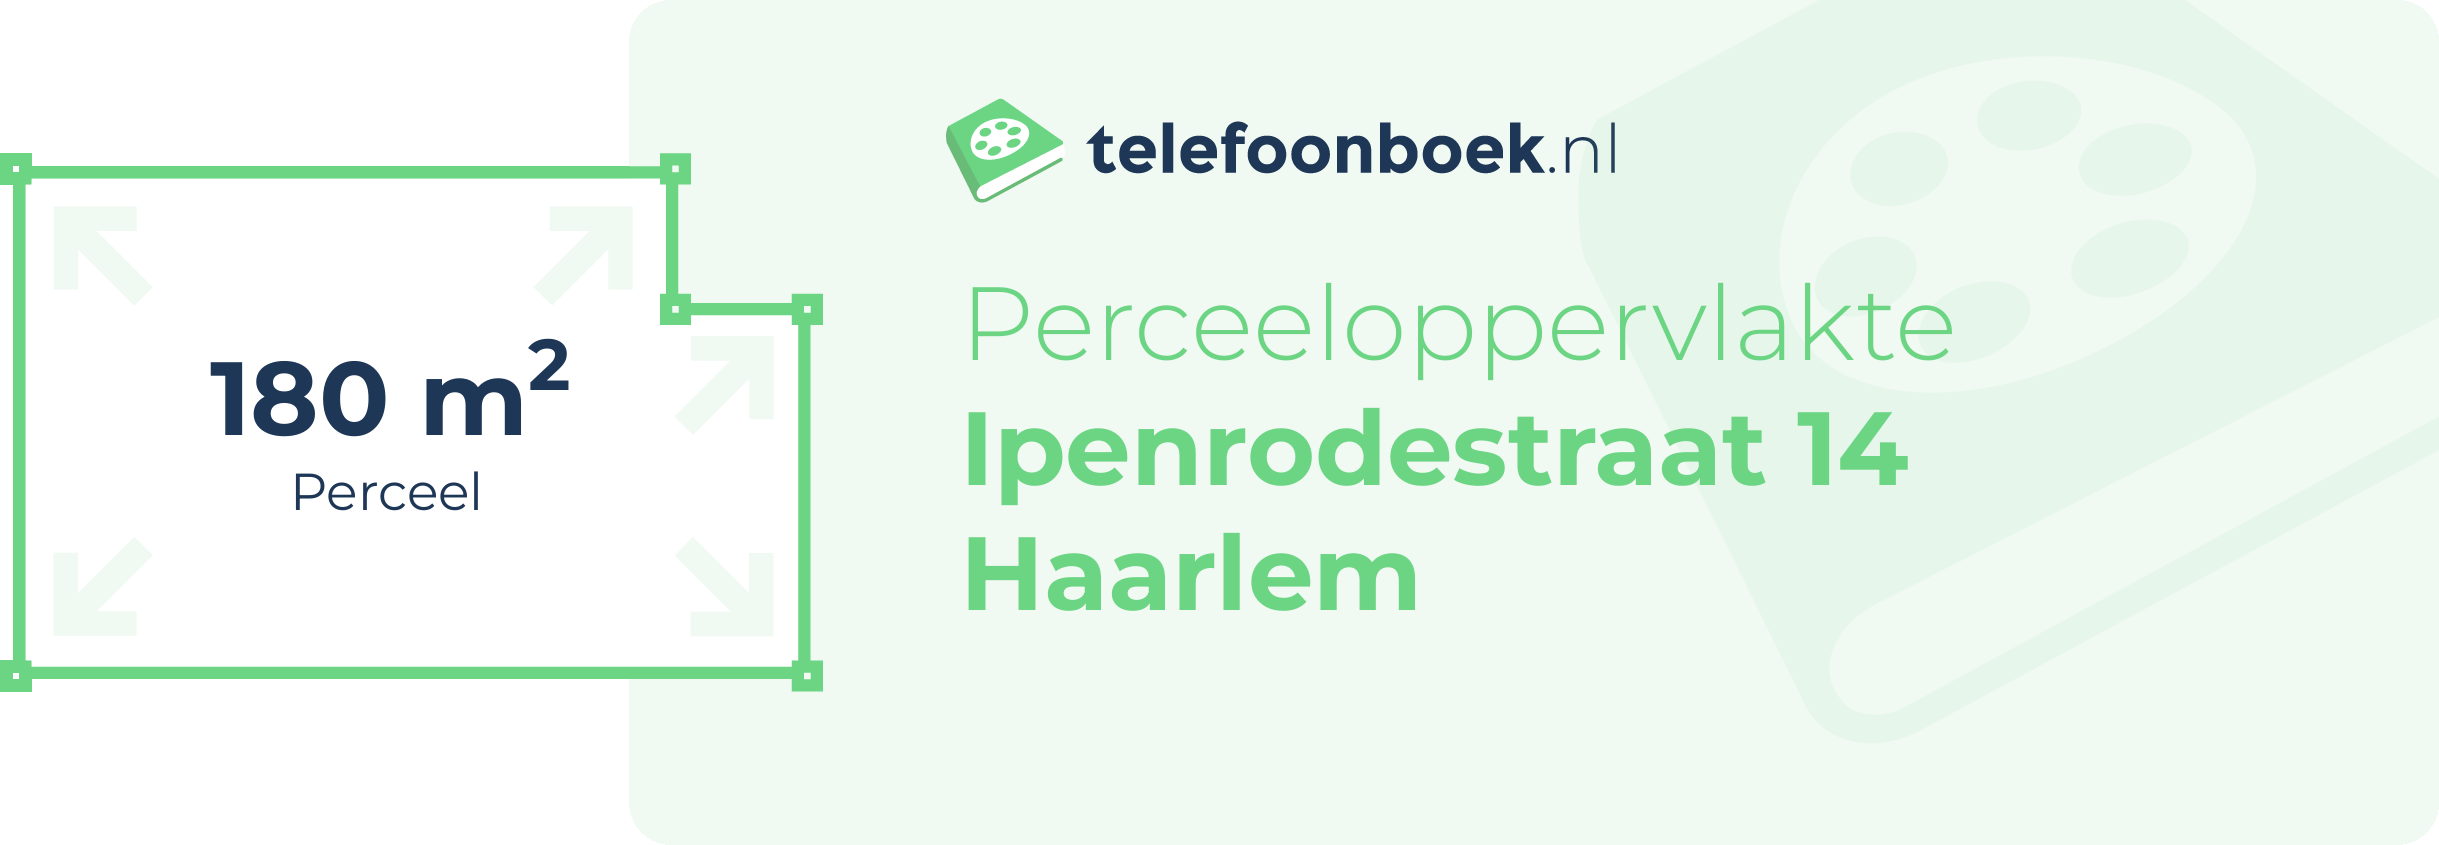 Perceeloppervlakte Ipenrodestraat 14 Haarlem